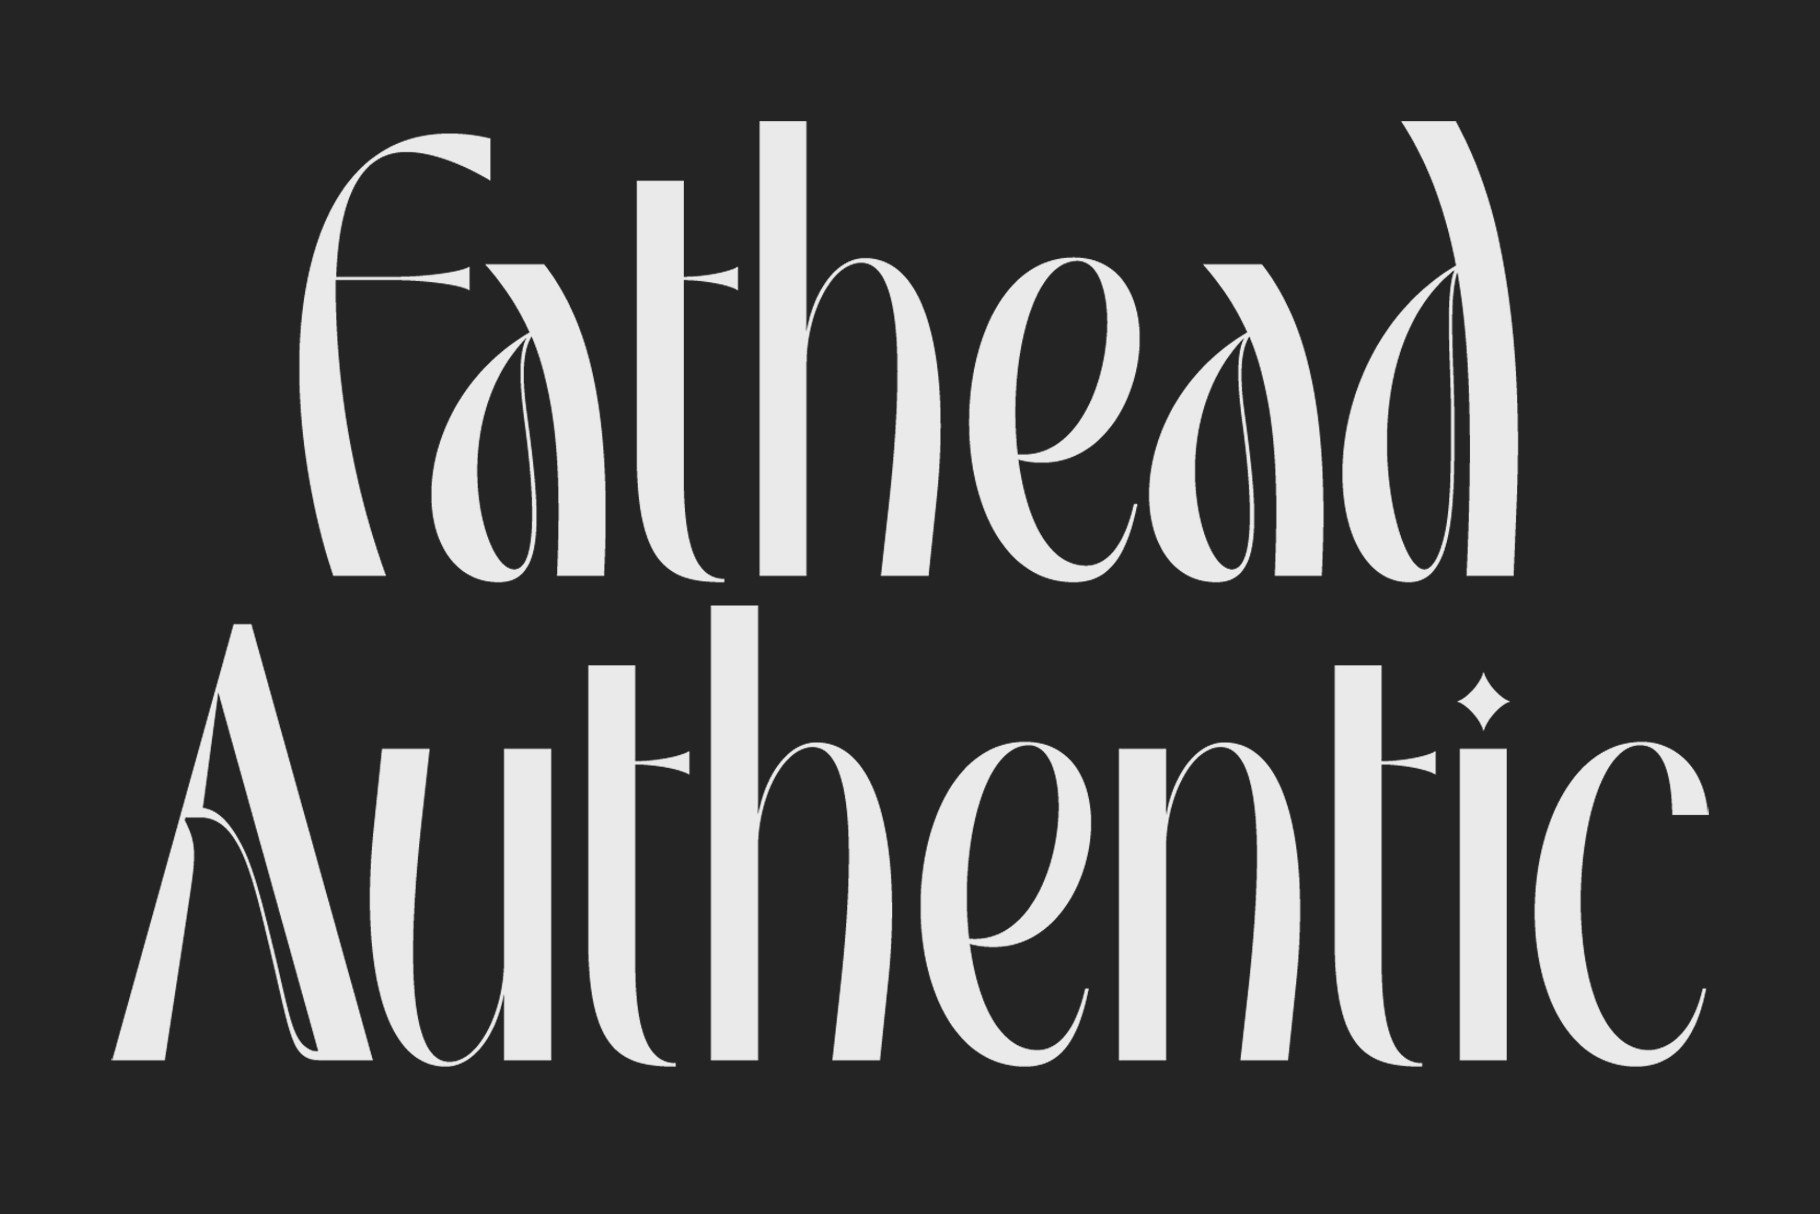 Font Fathead Authentic